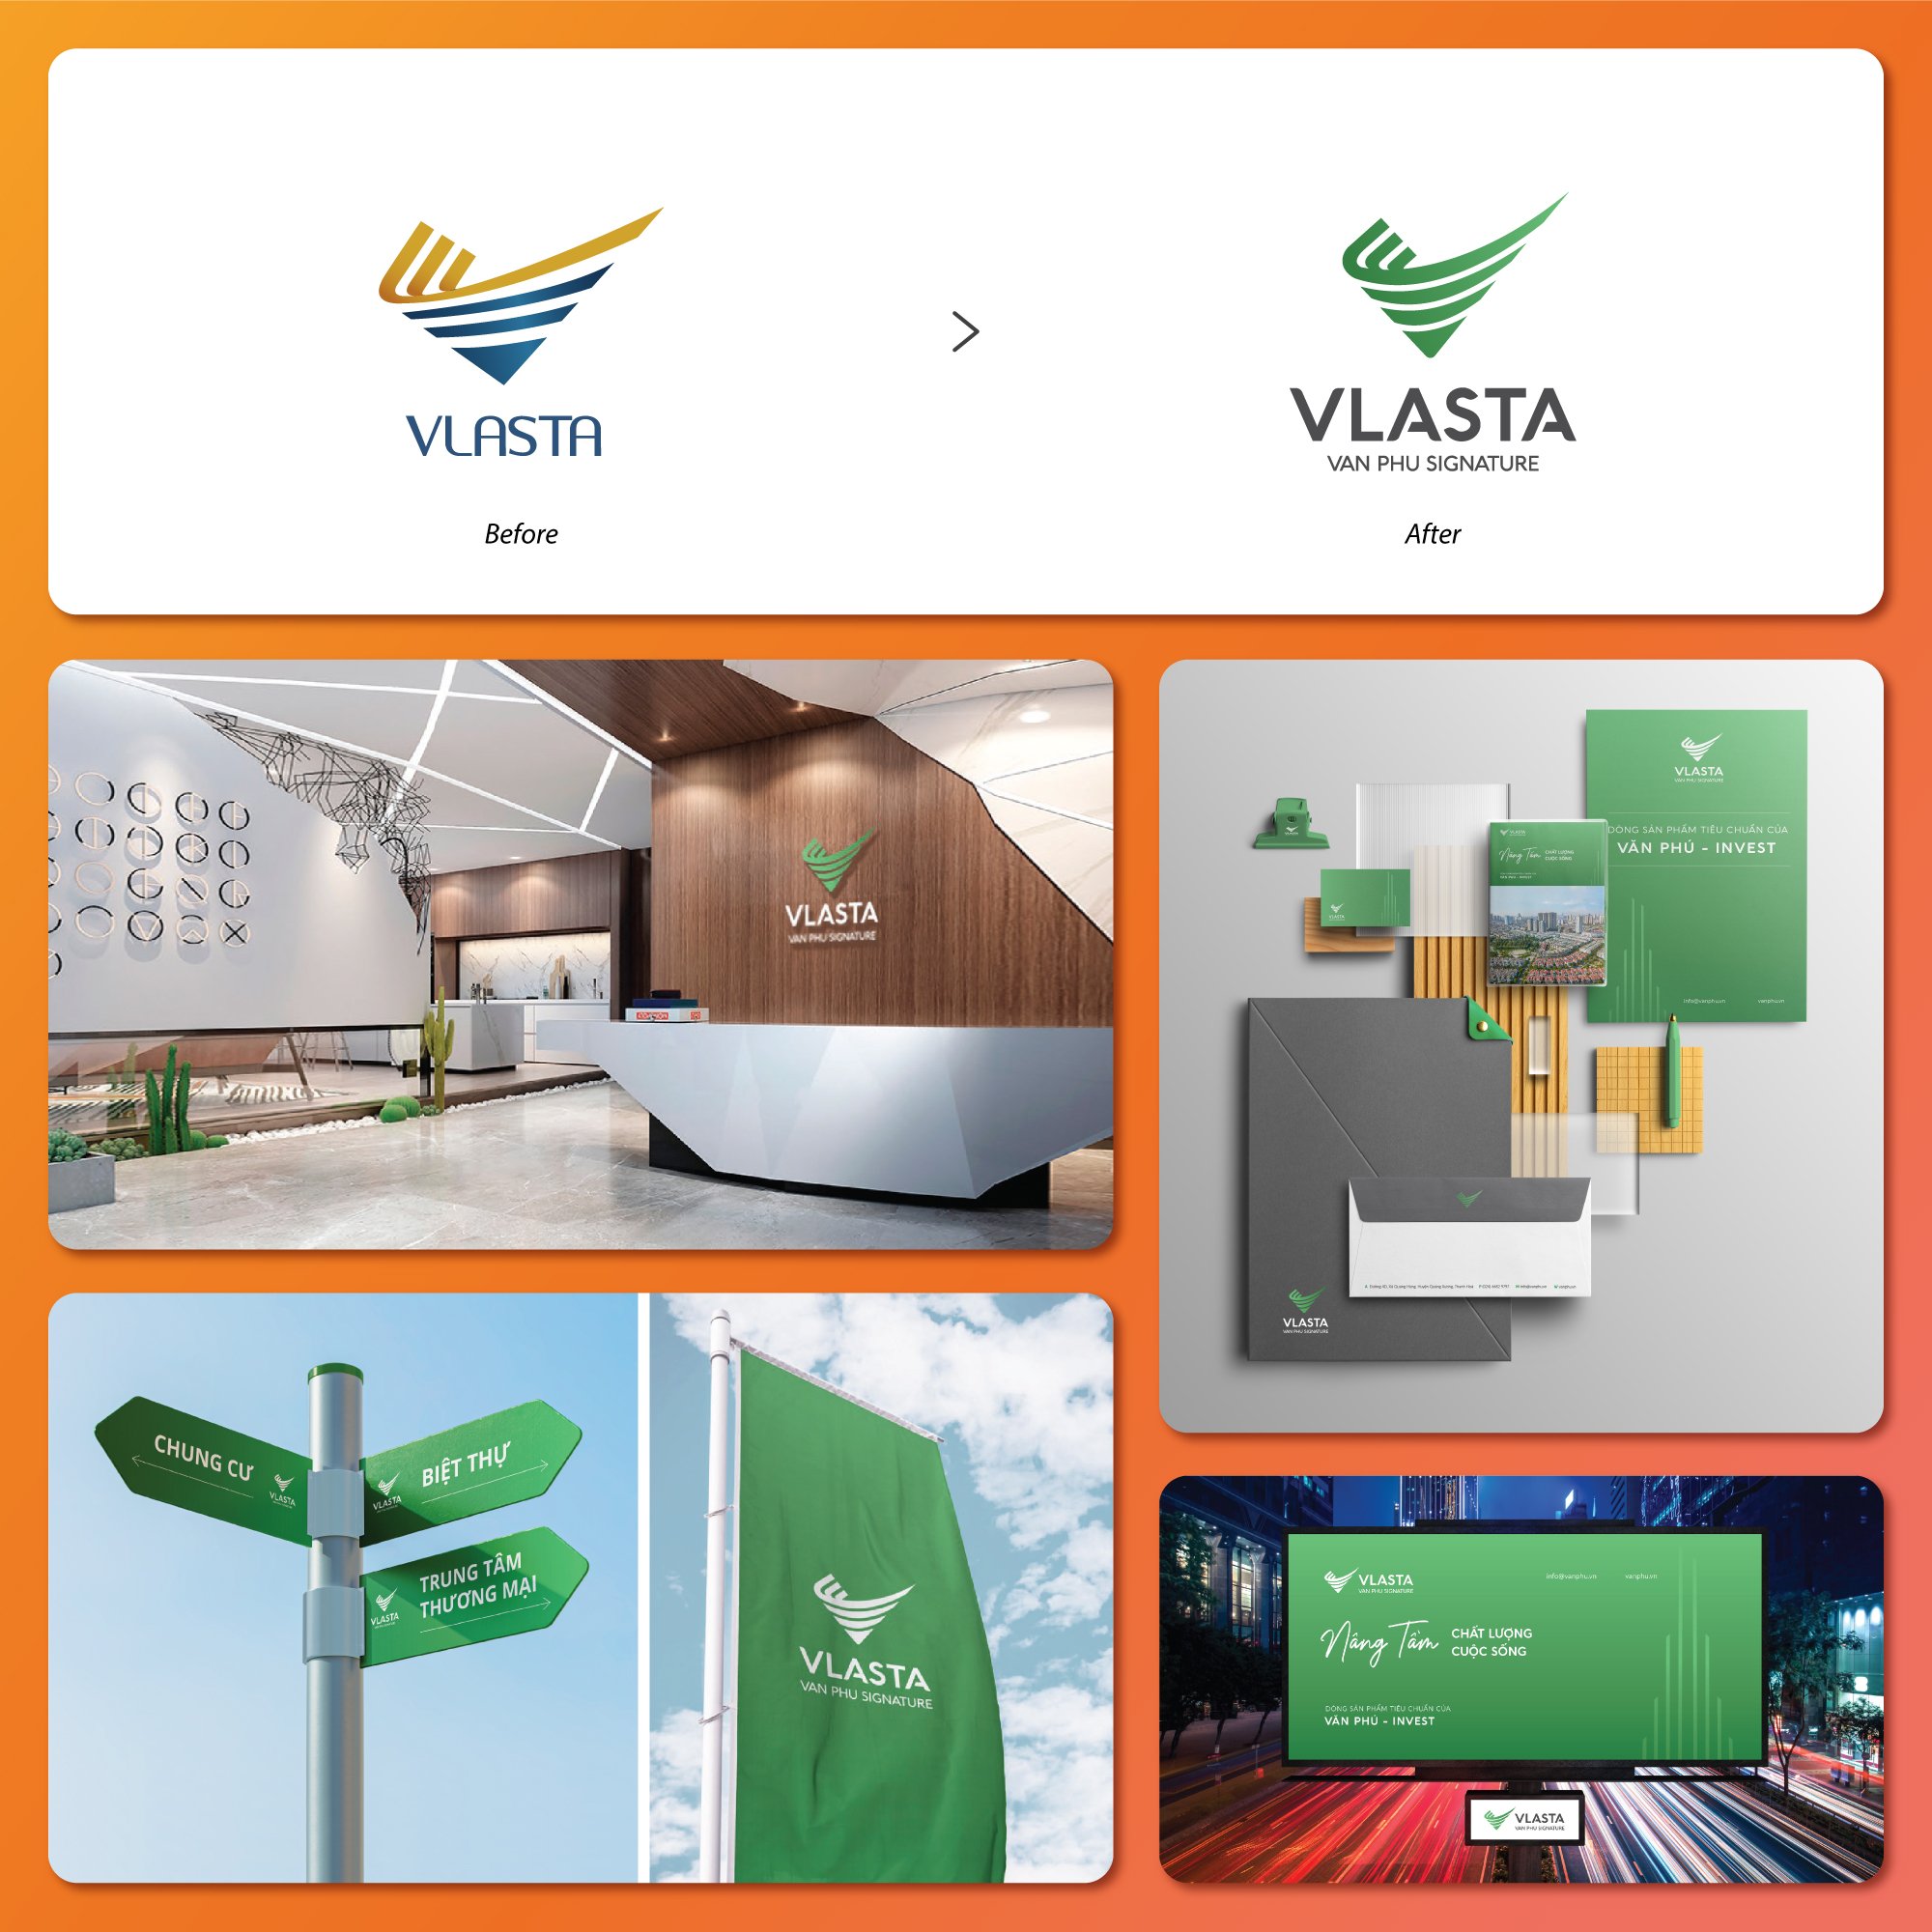 Văn Phú Invest, Vlasta, nhận diện thương hiệu, thương hiệu bất động sản, tái thiết kế thương hiệu, chuẩn hoá thương hiệu